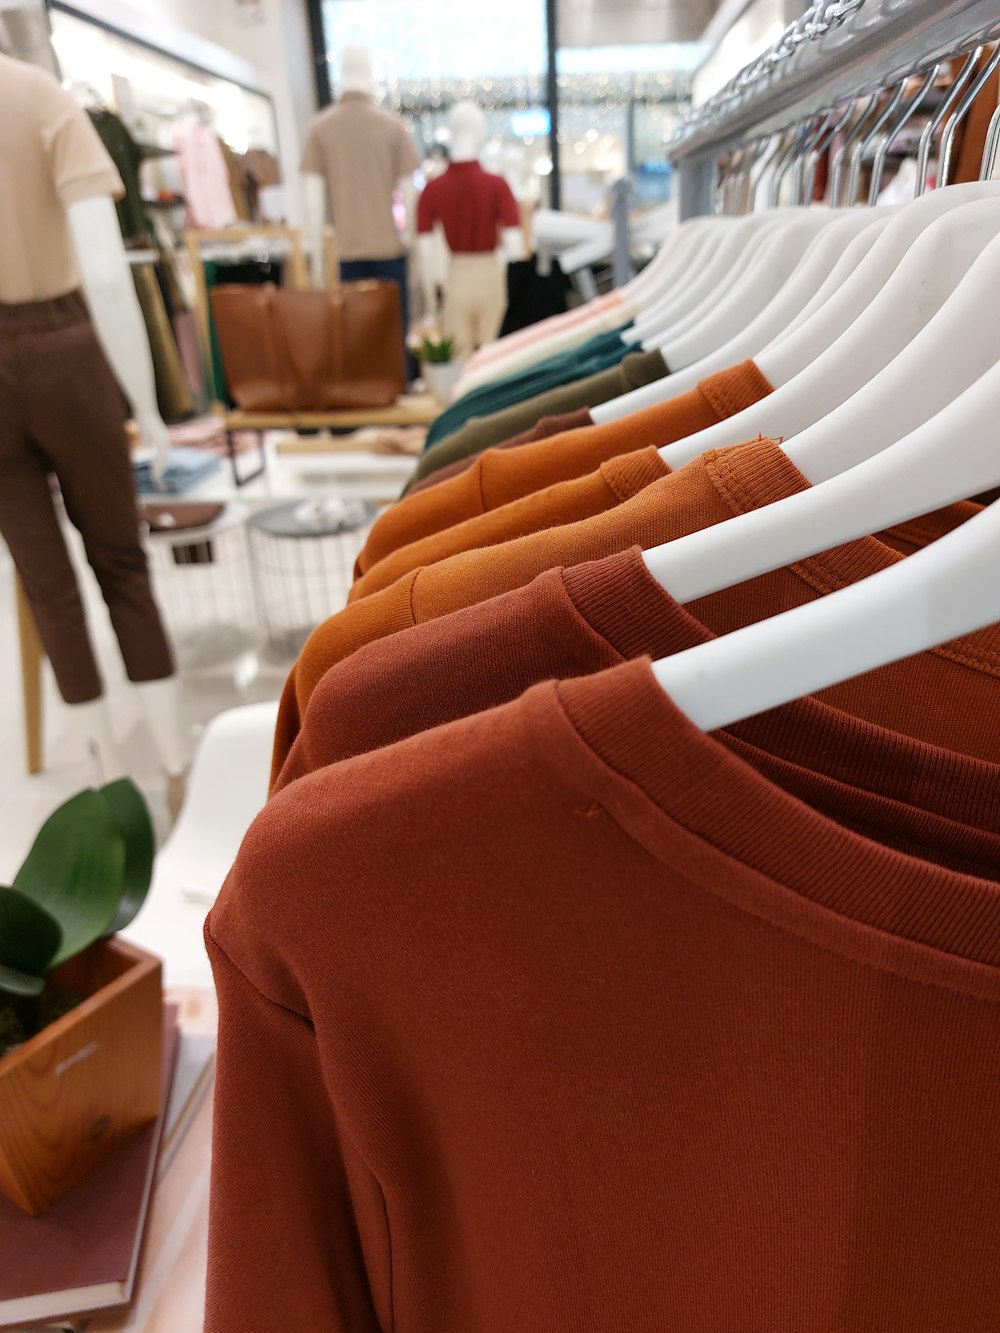 Una fila di camicie appese a uno scaffale in un negozio di abbigliamento